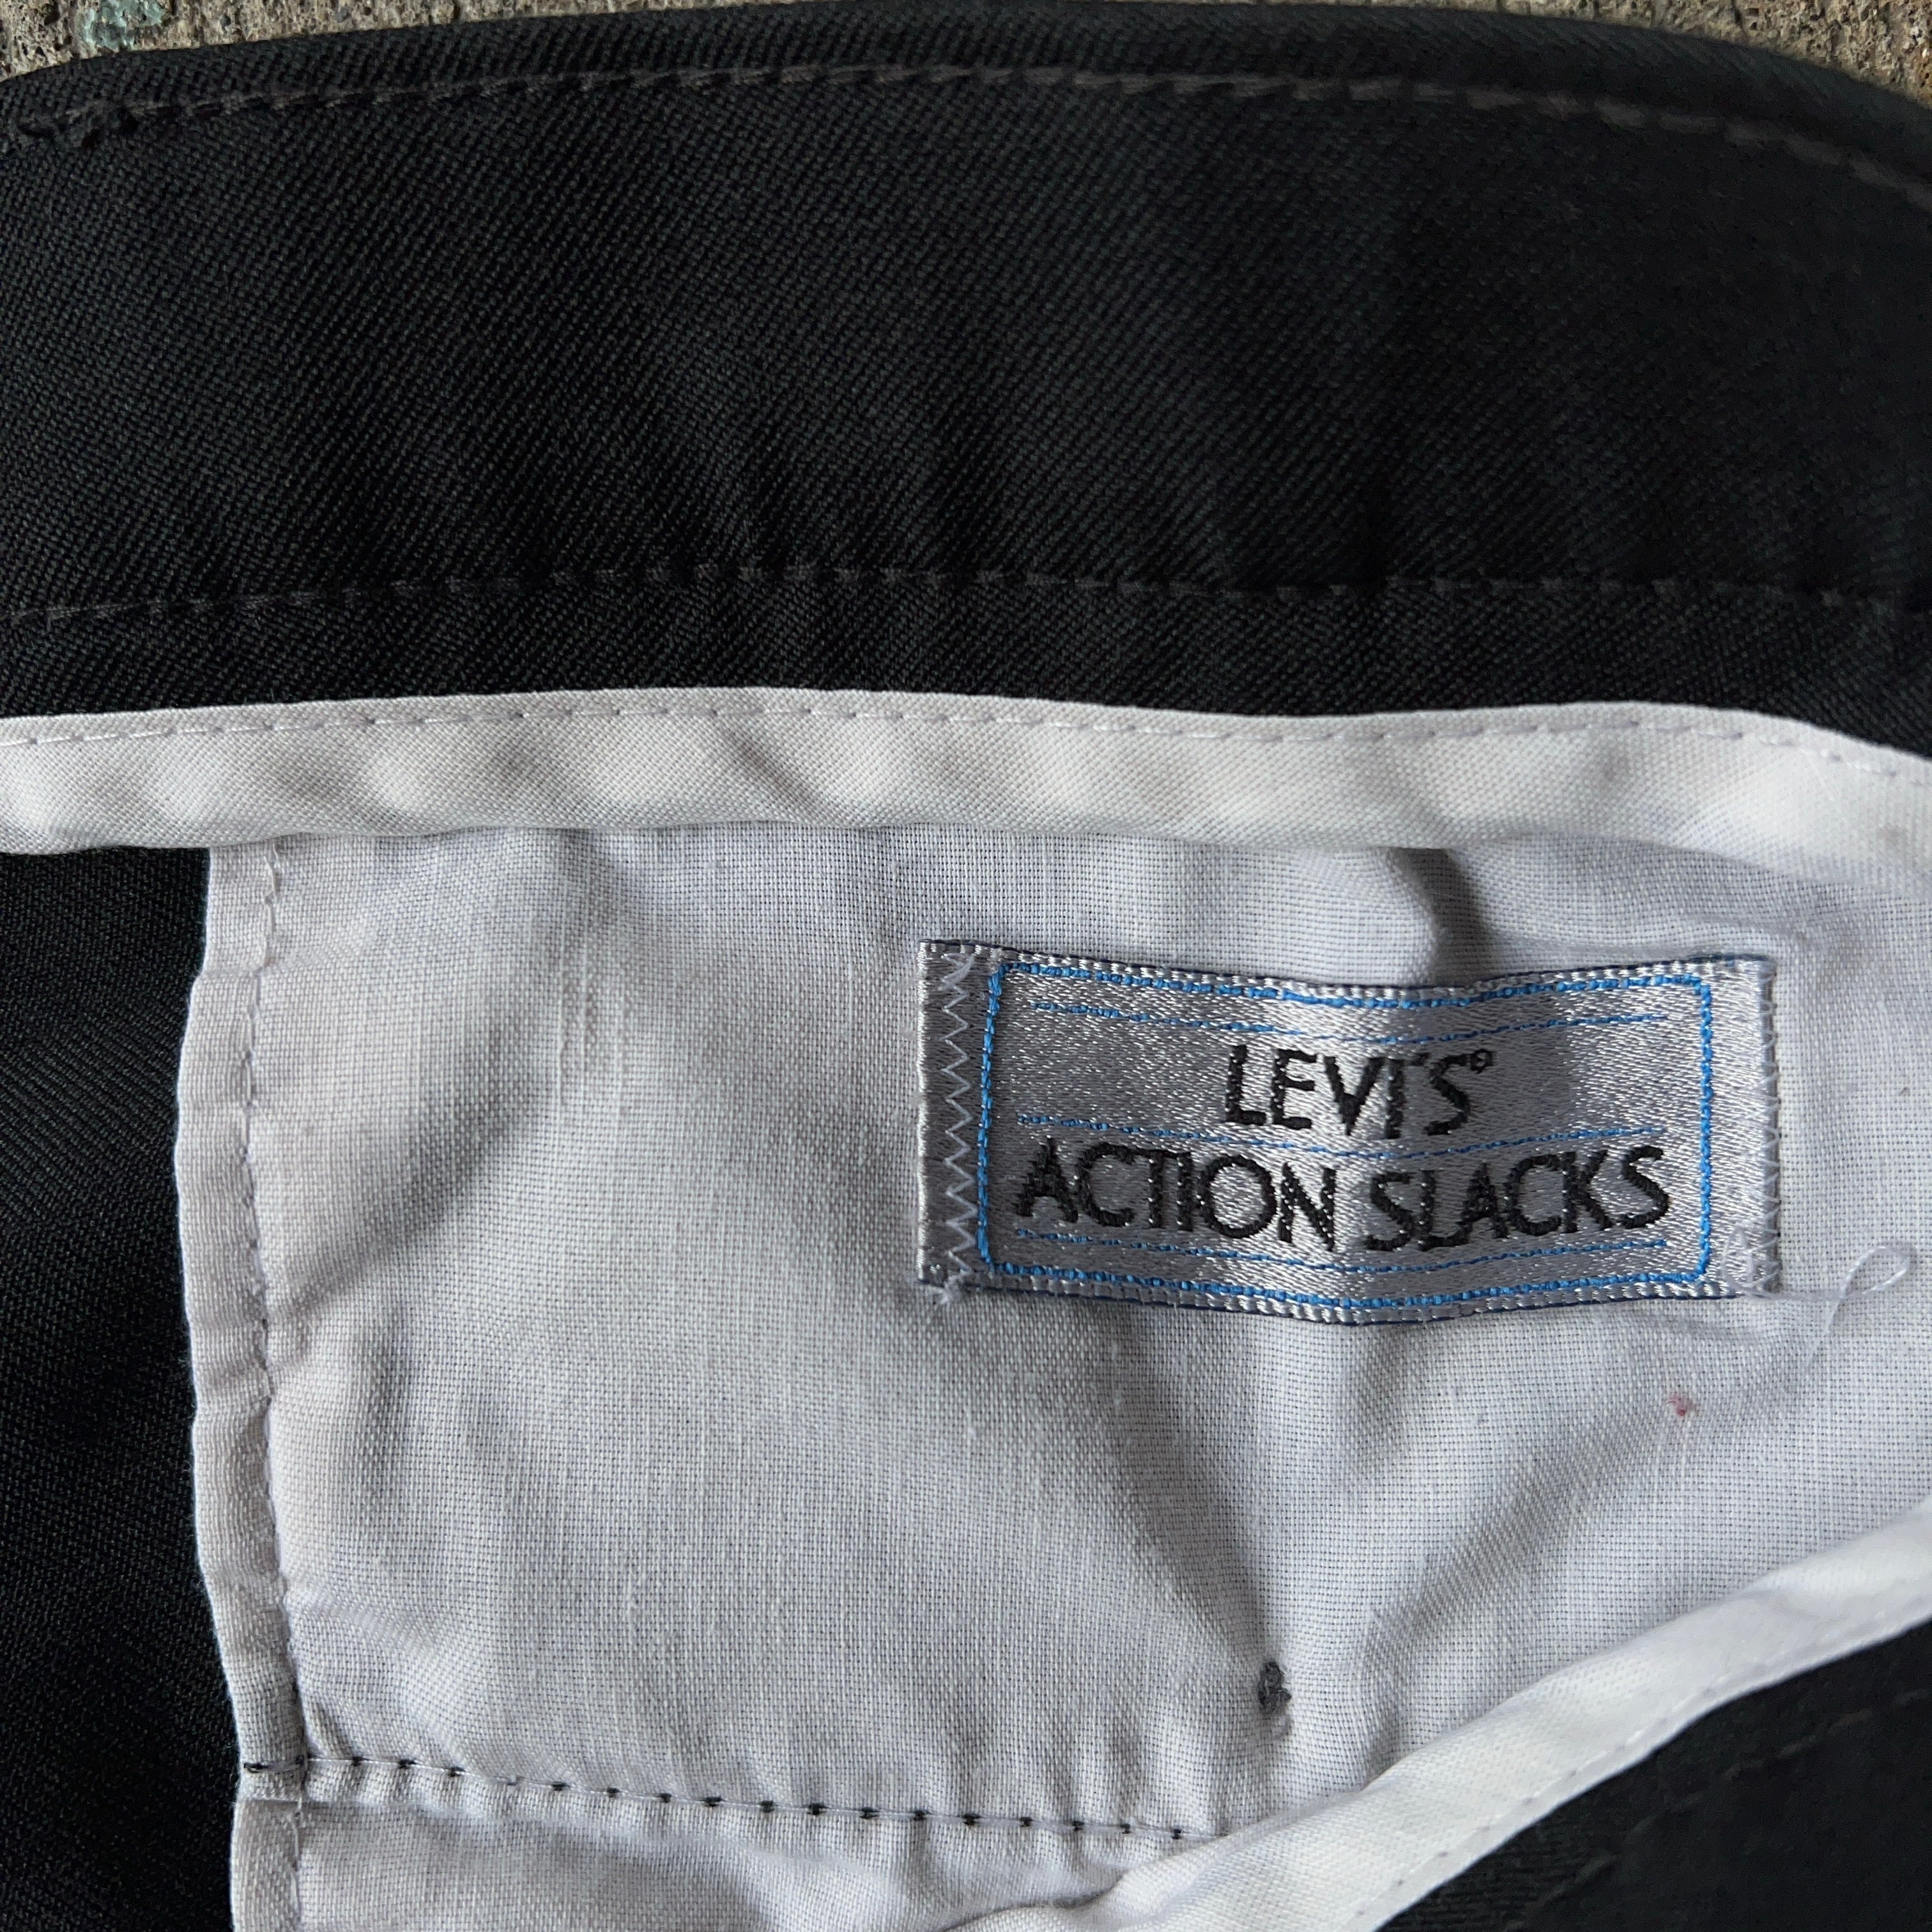 90's LEVI’S ACTION SLACKS Slacks Black USA製 W36 L30 90年代 リーバイス アクションスラックス  ブラック【TH0472】